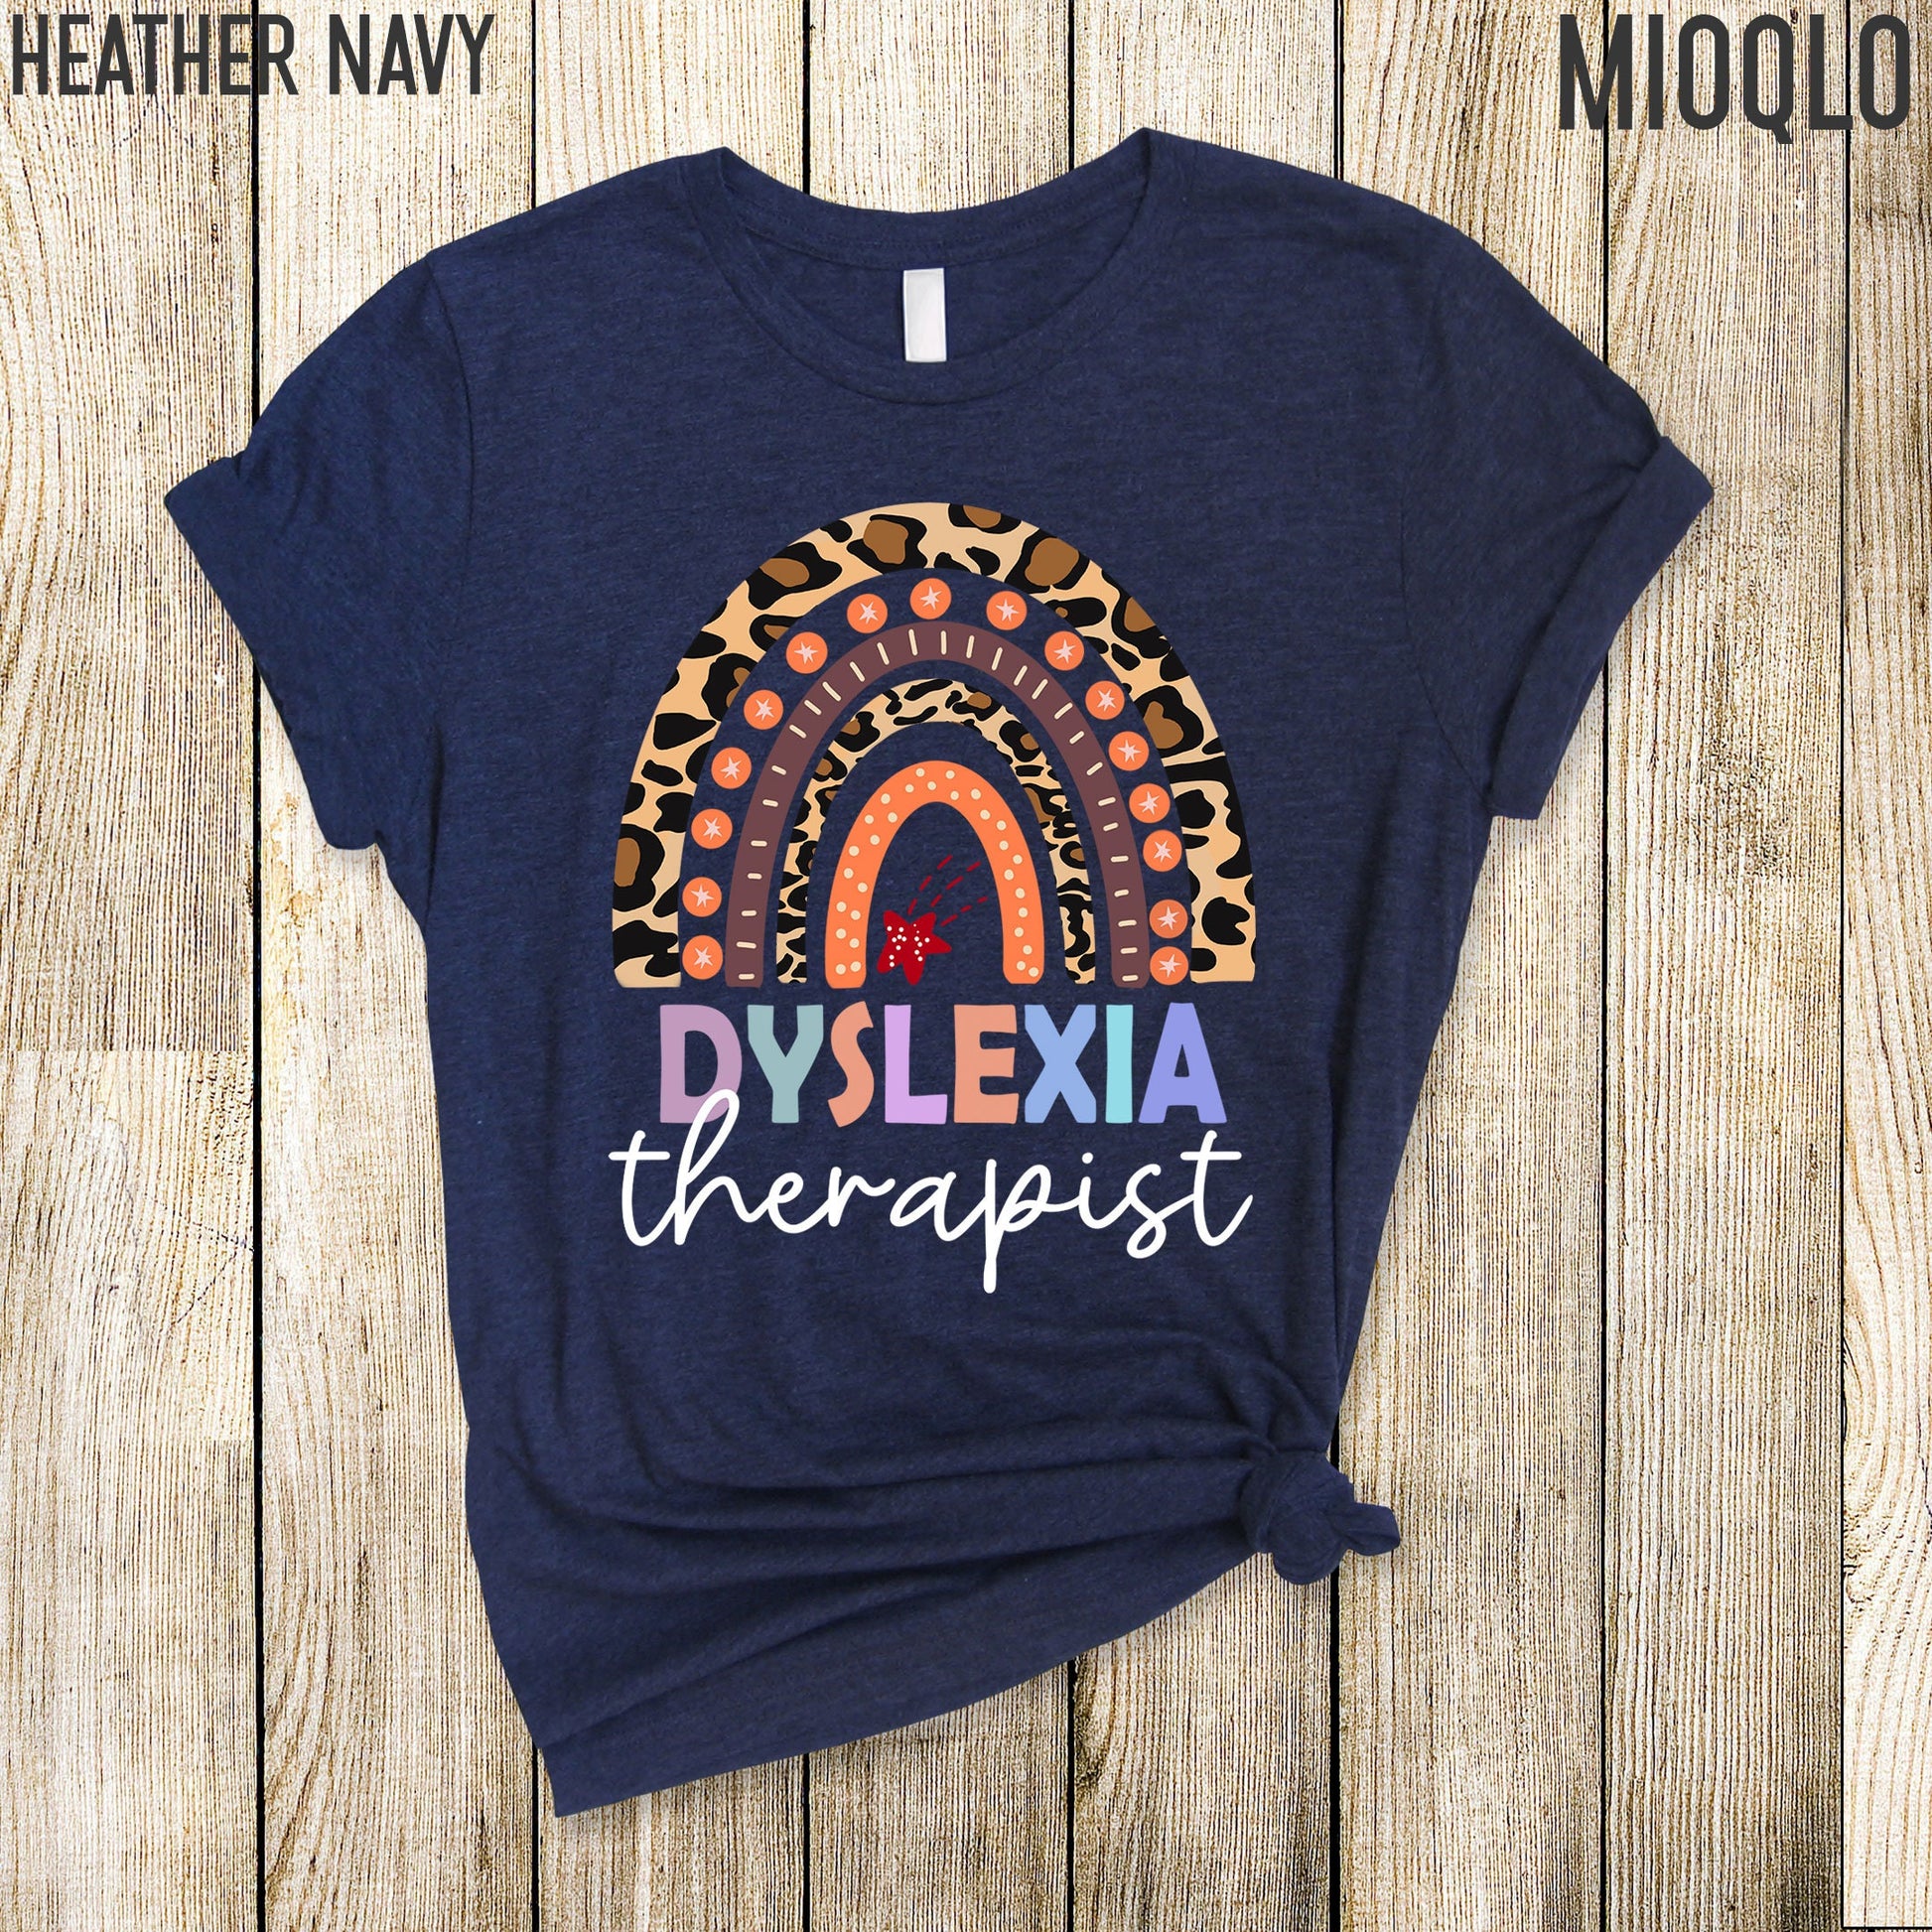 Dyslexia, Dyslexia Shirt, Dyslexia Therapist Shirt, Dyslexia Therapy Shirt, Mom Support Dyslexic, Dyslexia Awareness, Dyslexia Teacher Gift